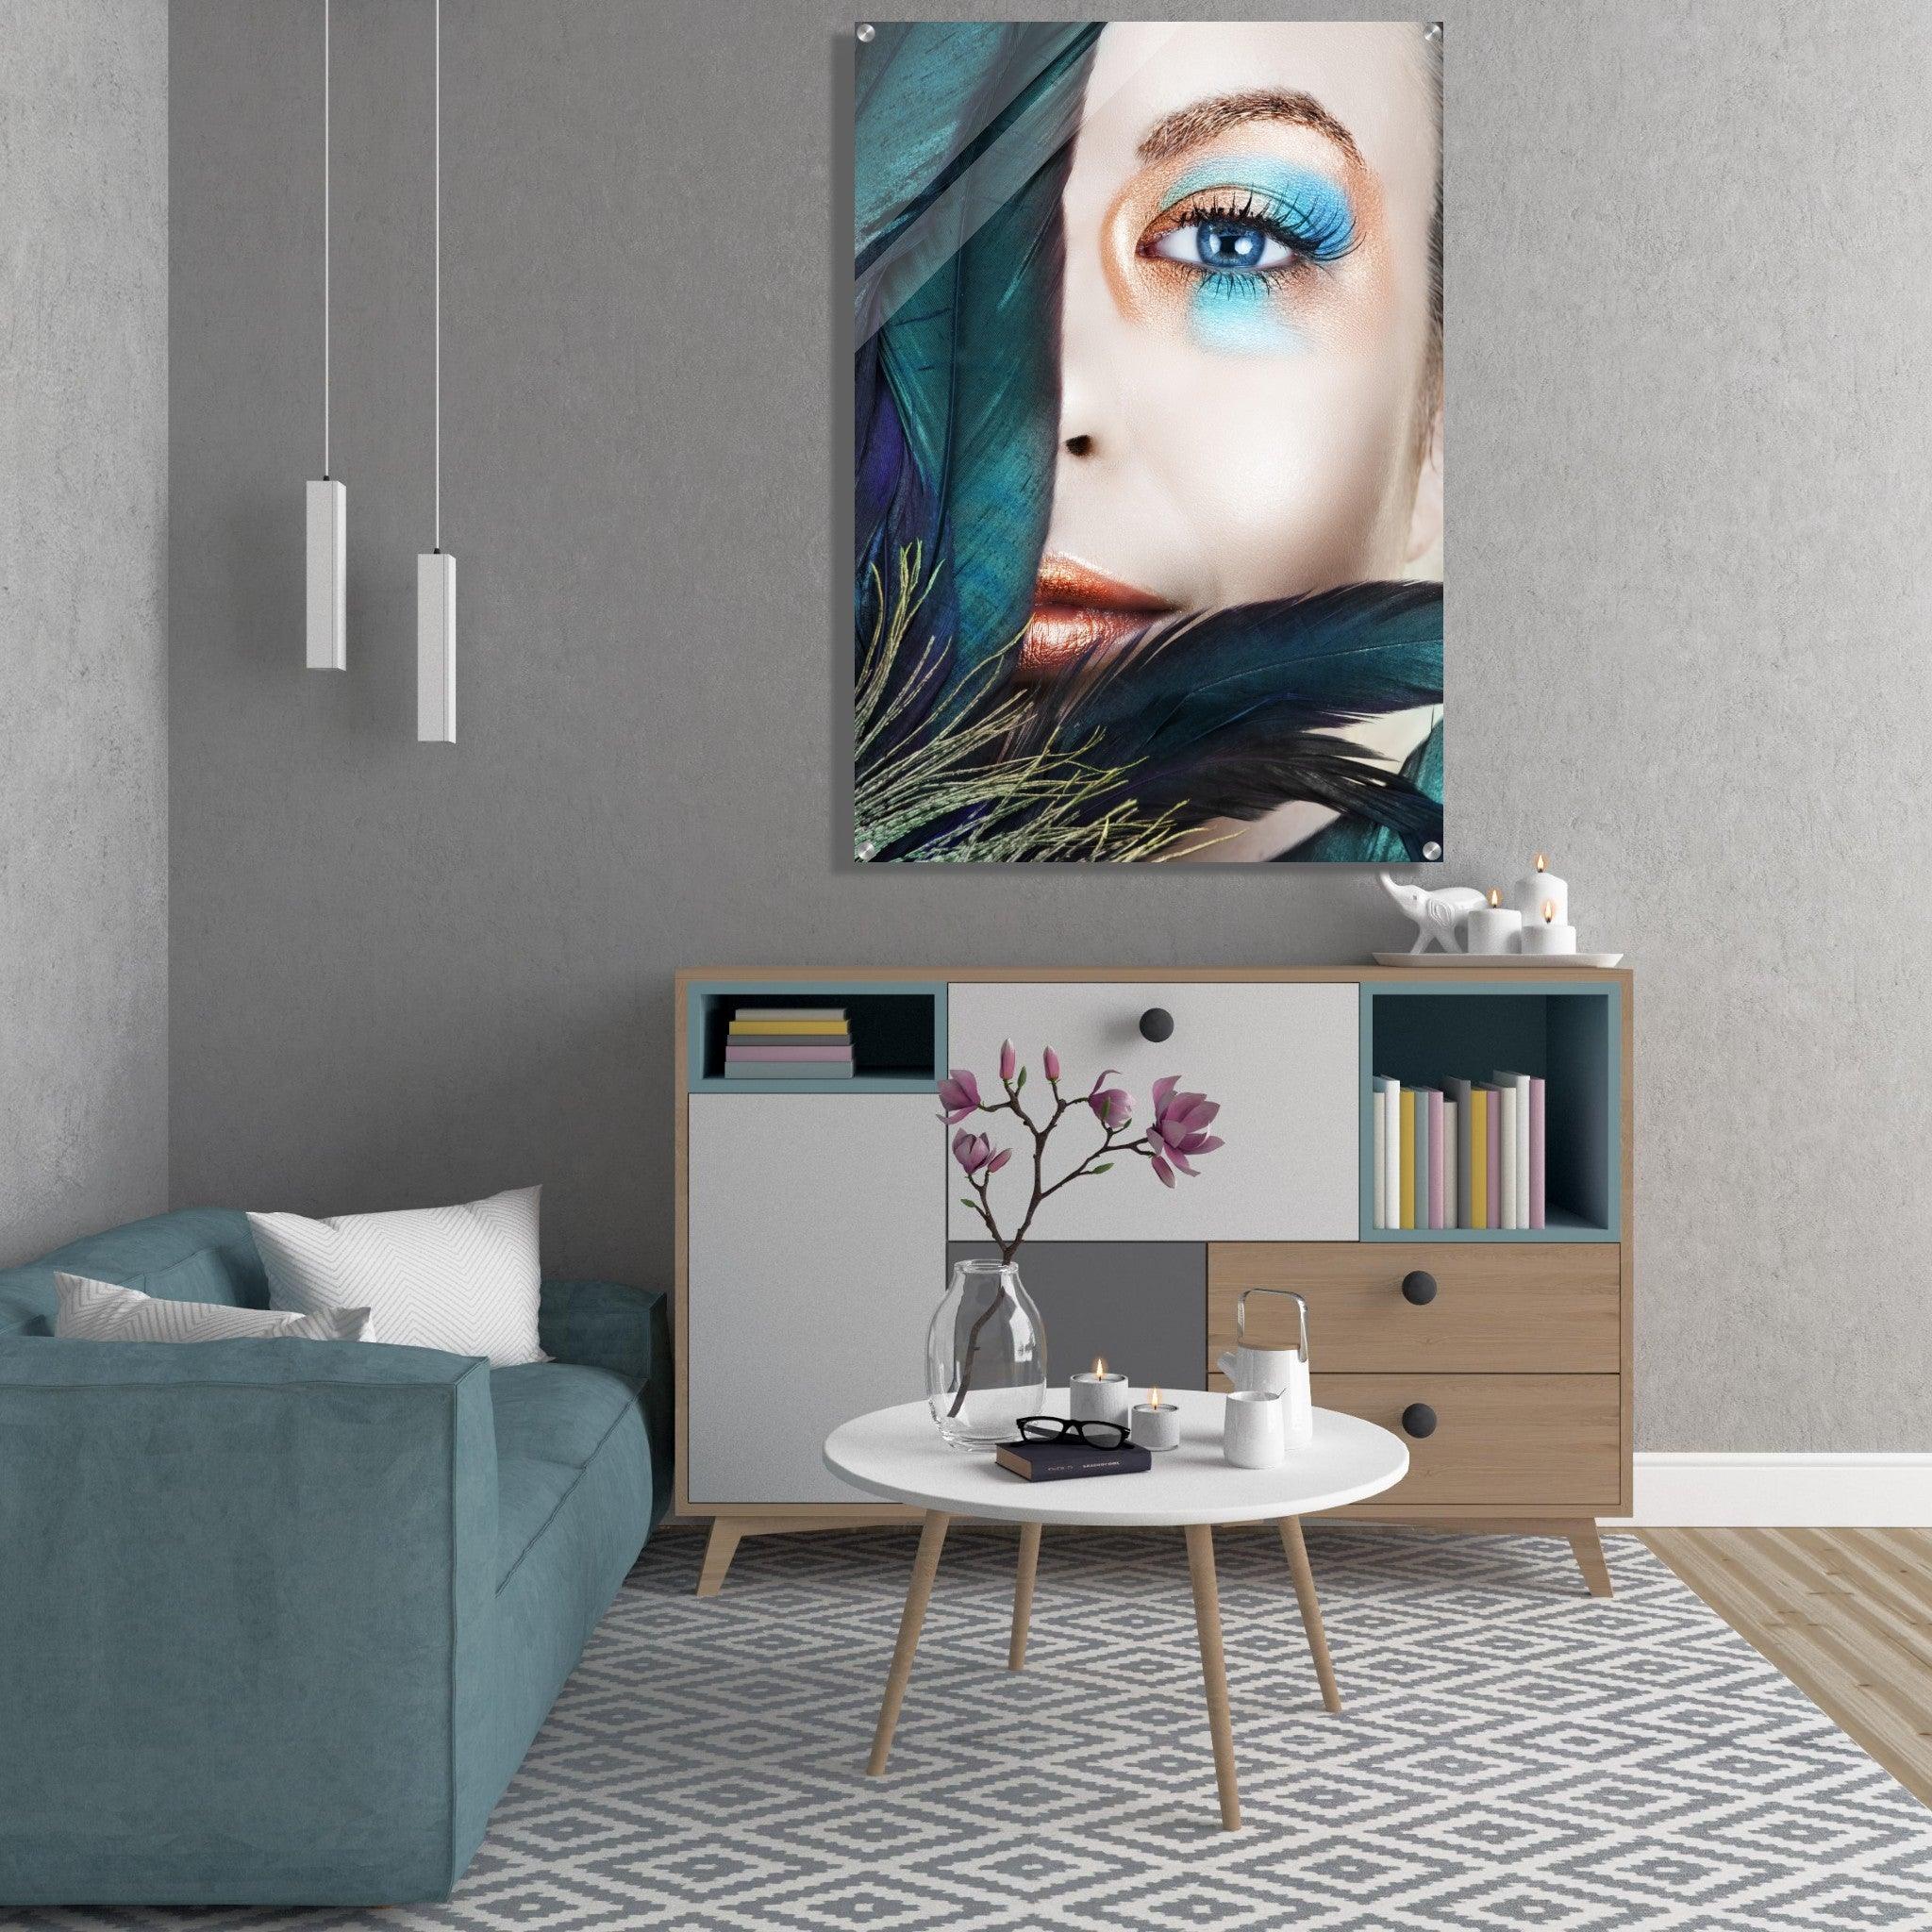 Azure Ambiance: Gilded Beauty Behind Feathers Acrylic Glass Wall Art - Wallfix